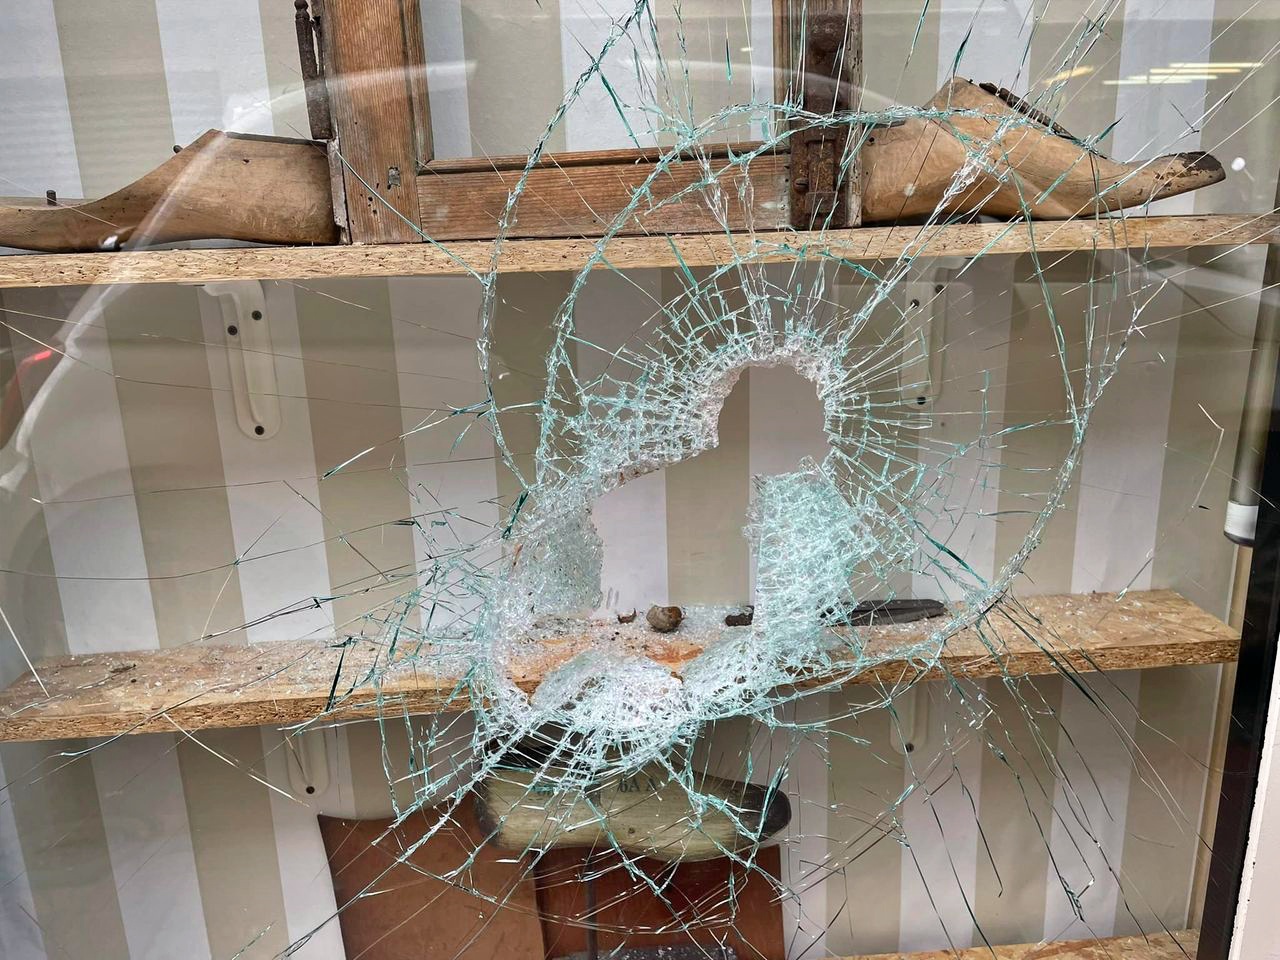 negozio u castè via cavour ventimiglia danneggiamento vetrina spaccata